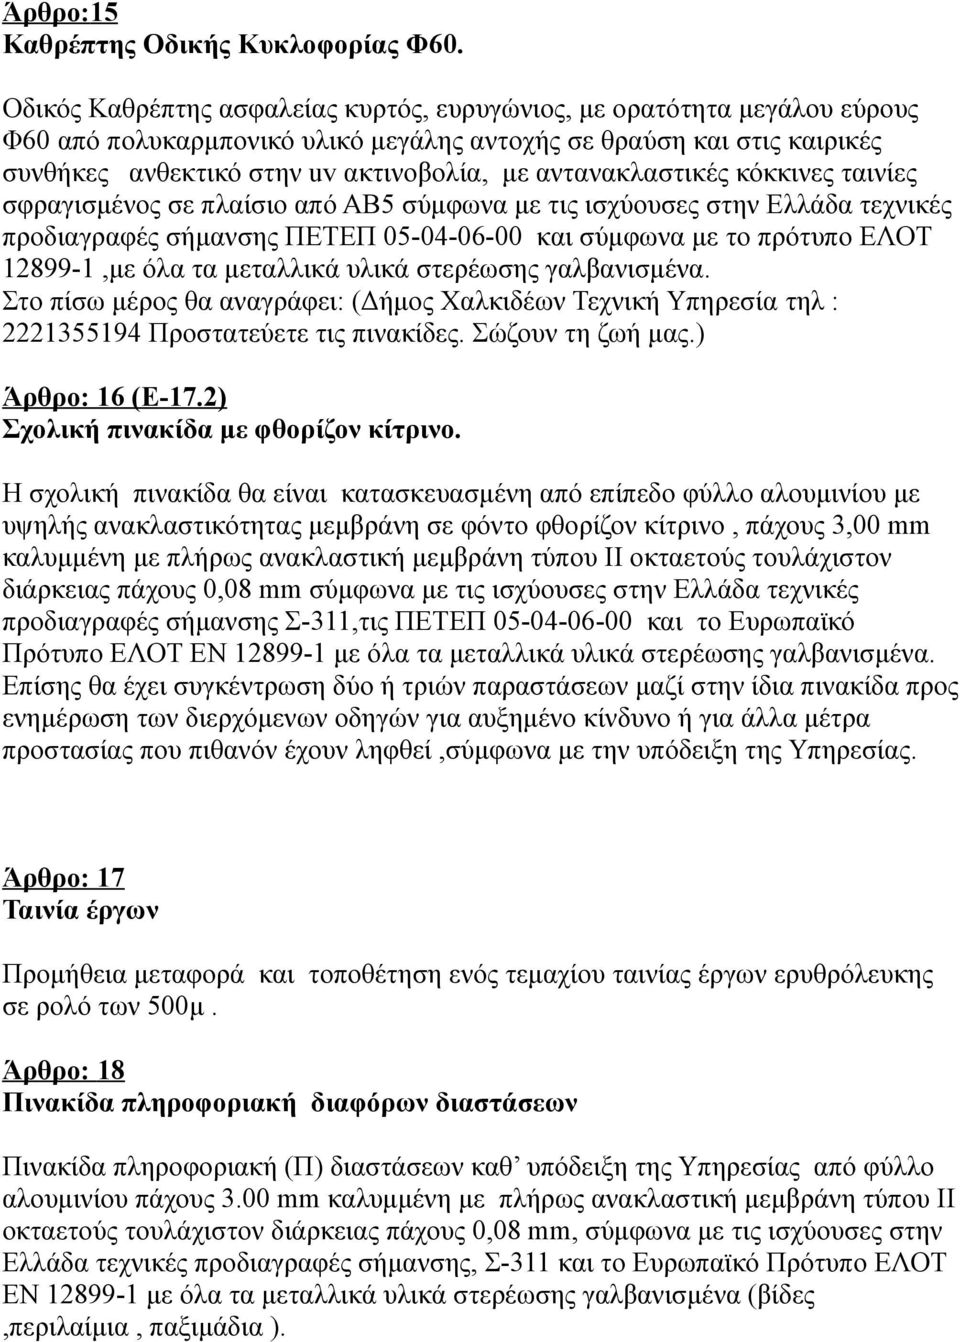 αντανακλαστικές κόκκινες ταινίες σφραγισμένος σε πλαίσιο από ΑΒ5 σύμφωνα με τις ισχύουσες στην Ελλάδα τεχνικές προδιαγραφές σήμανσης ΠΕΤΕΠ 05-04-06-00 και σύμφωνα με το πρότυπο ΕΛΟΤ 12899-1,με όλα τα